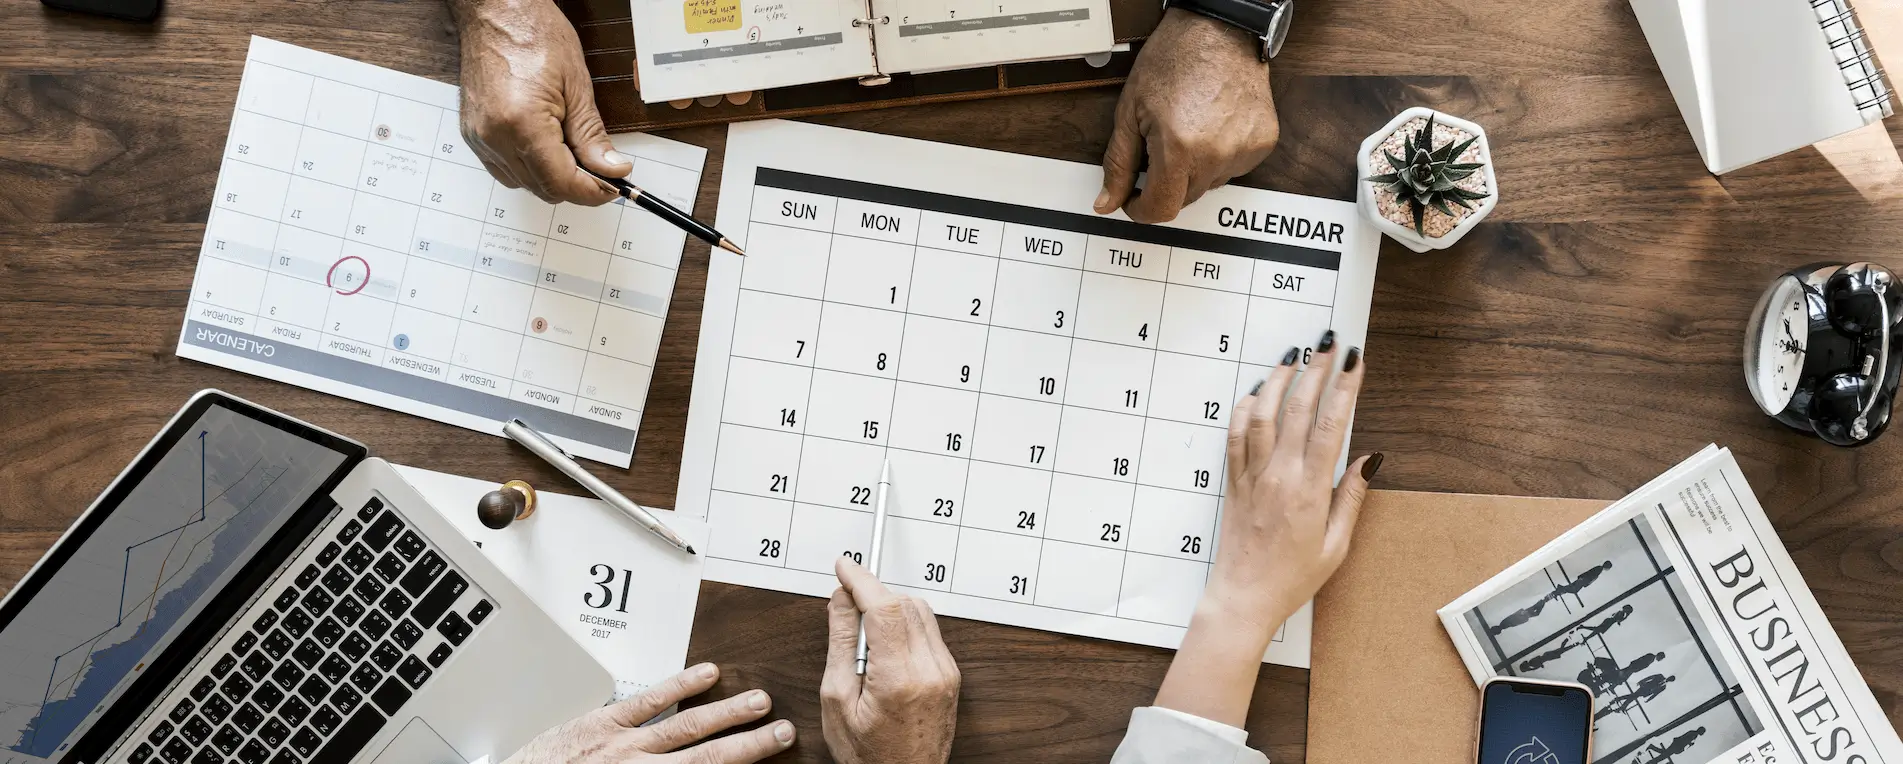 kalendarz umawianie spotkania